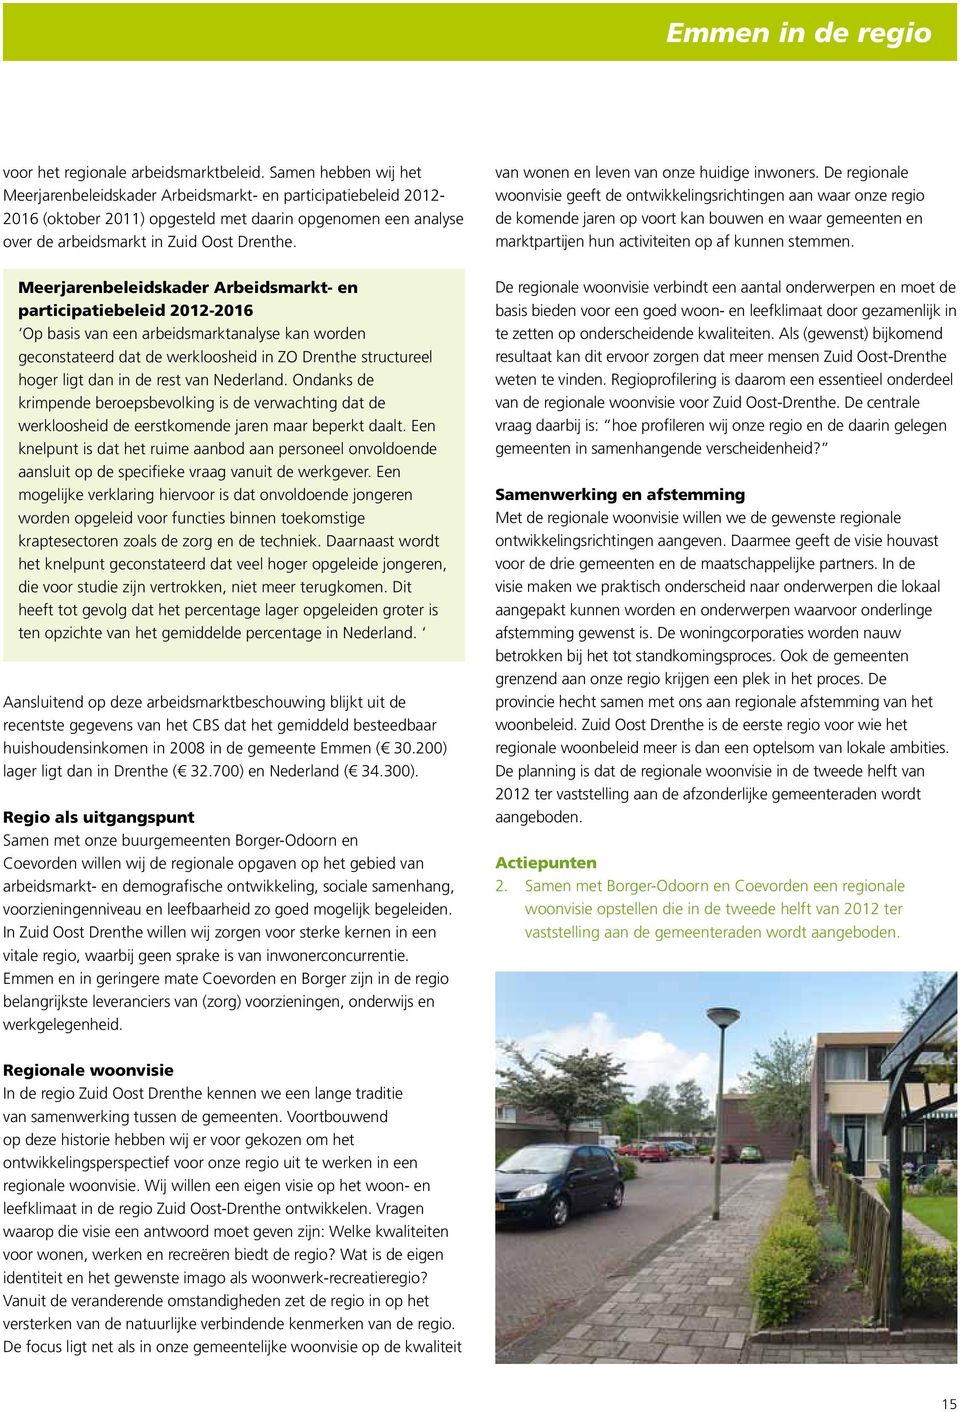 Meerjarenbeleidskader Arbeidsmarkt- en participatiebeleid 2012-2016 Op basis van een arbeidsmarktanalyse kan worden geconstateerd dat de werkloosheid in ZO Drenthe structureel hoger ligt dan in de